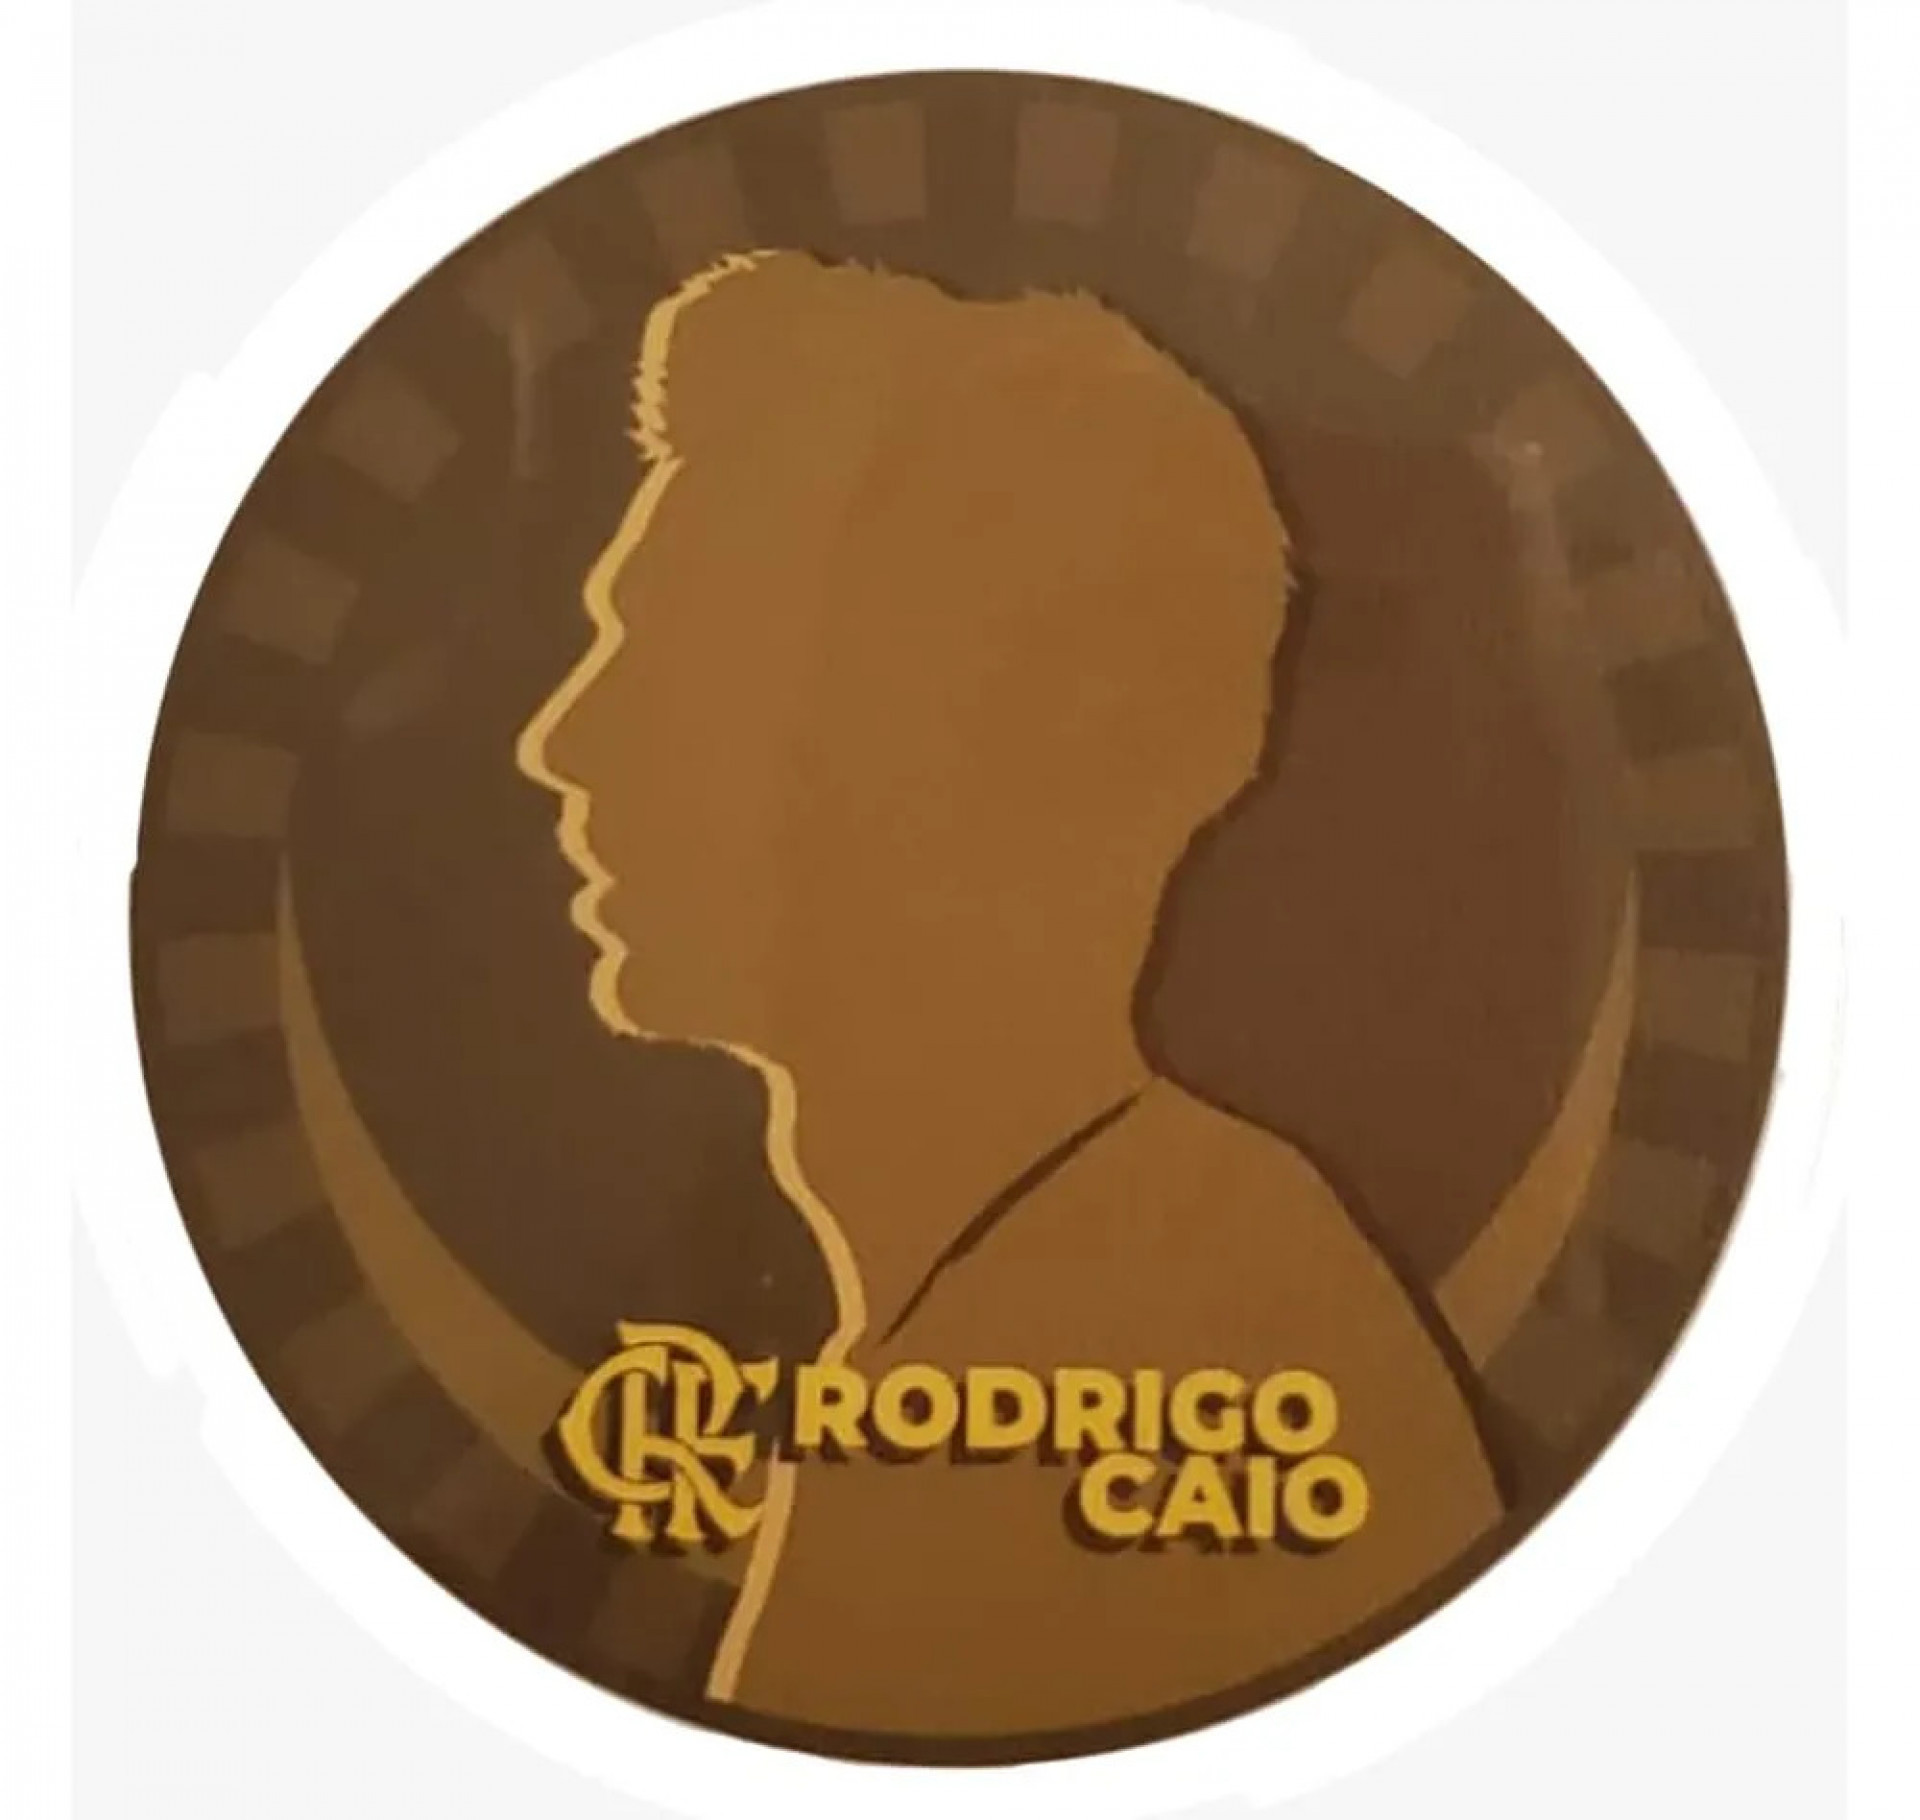 Patch de Rodrigo Caio, que será estampado na camisa do zagueiro - Reprodução